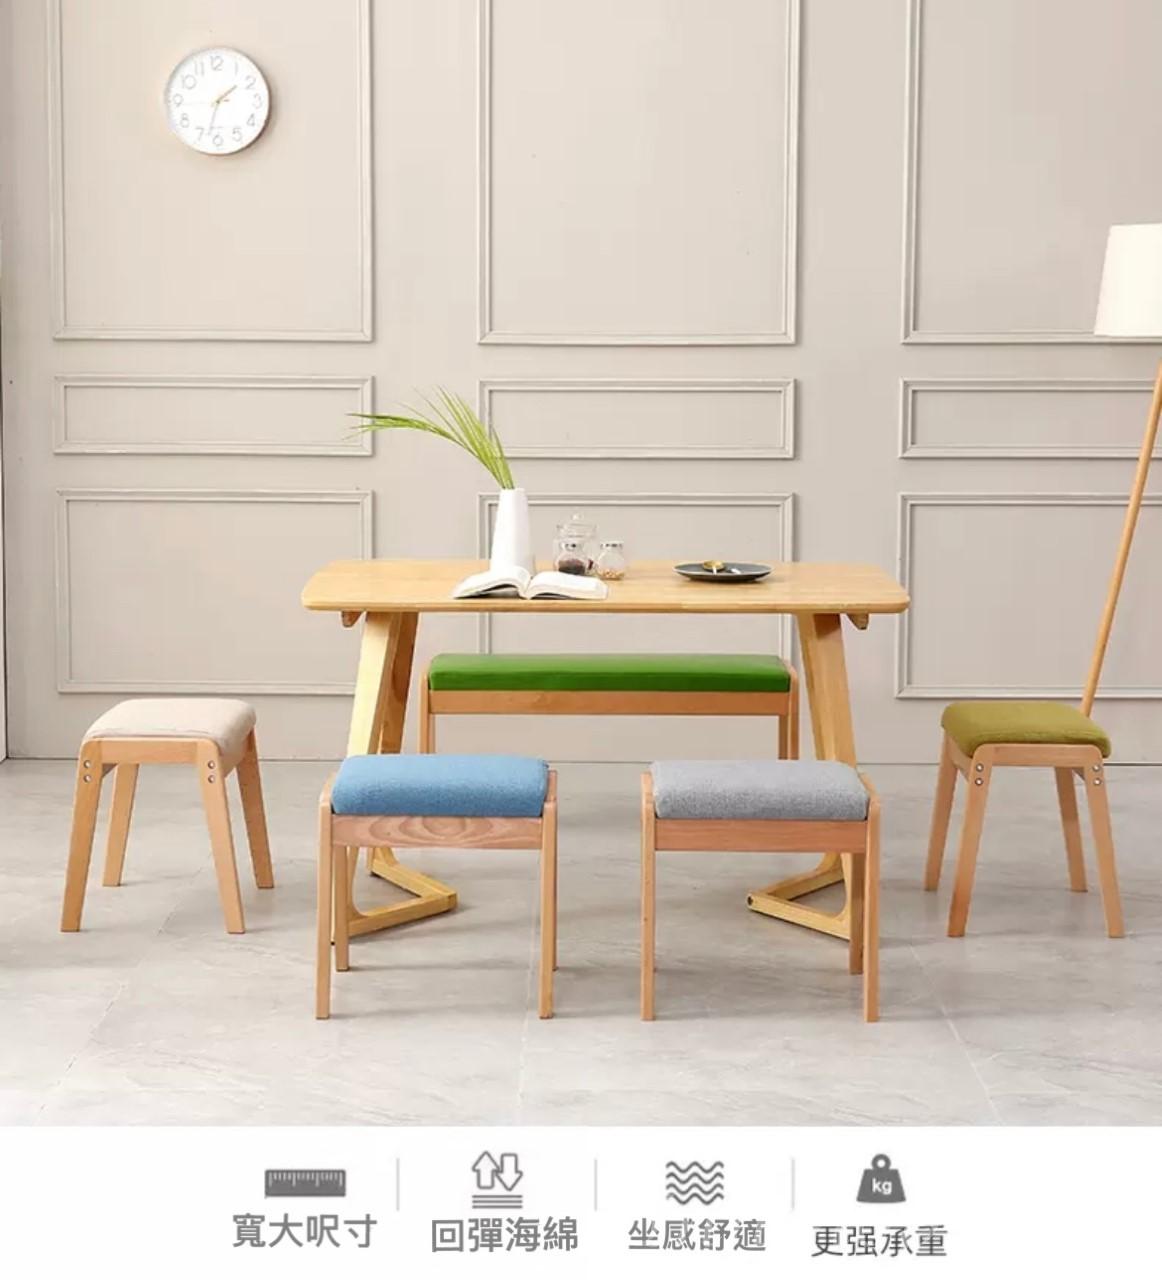 櫸木實木梳妝凳 換鞋凳 餐椅 (IS7705)